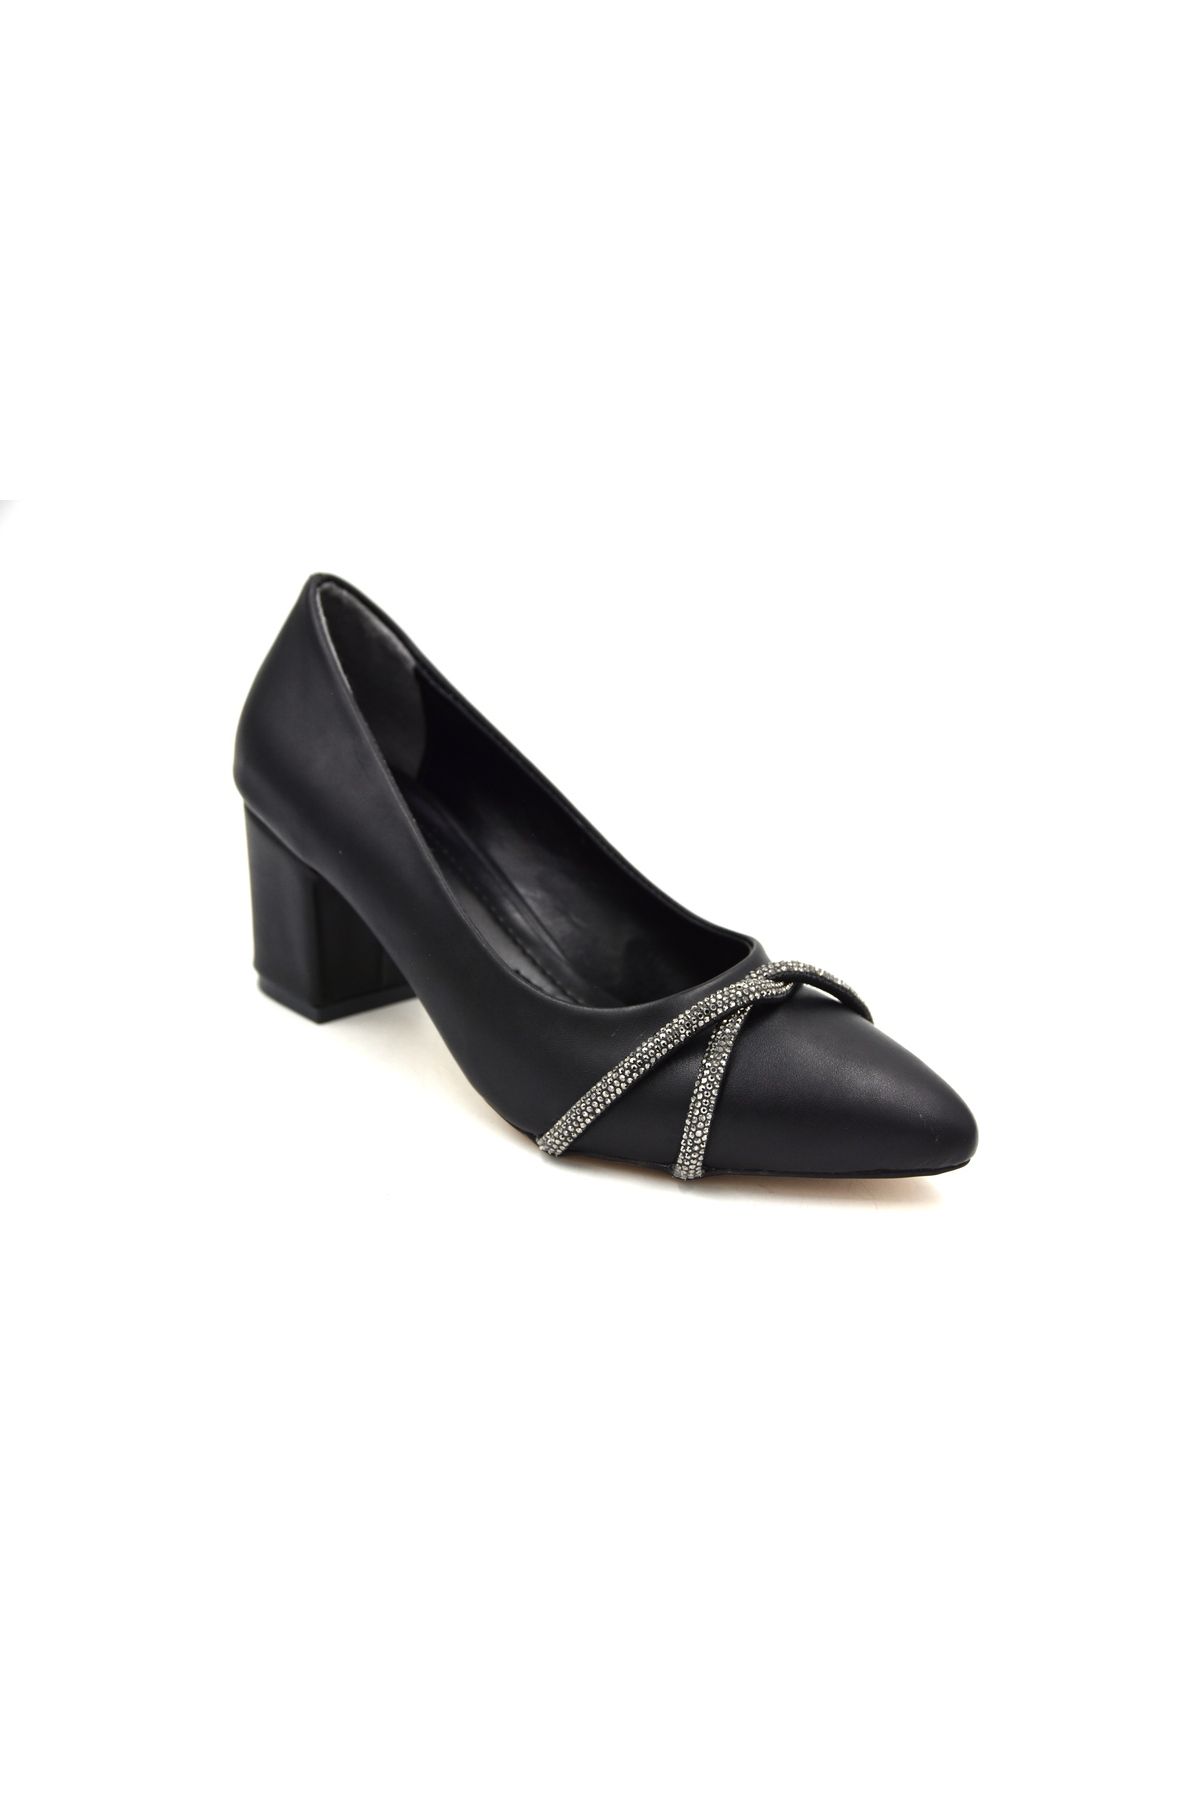 Prego (Oc Shoes) Kalın Topuklu Taş Biye Desenlik Kadın Ayakkabı SİYAH